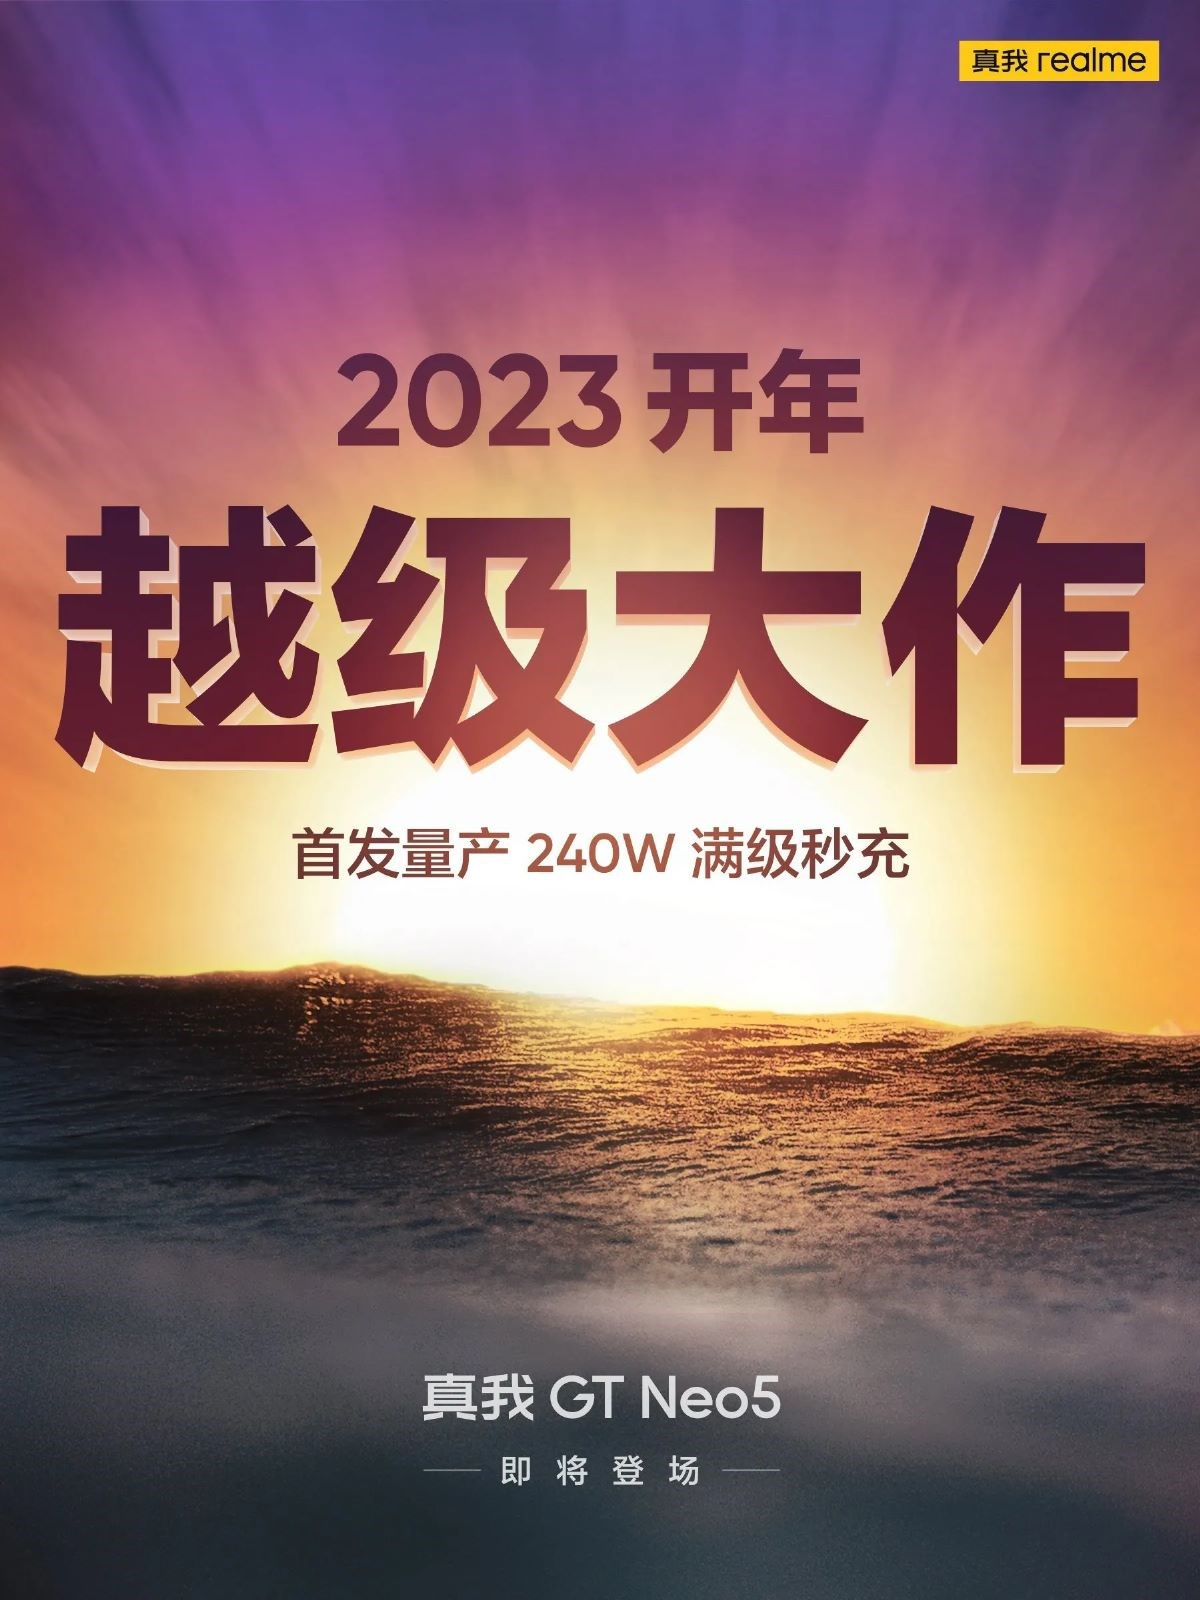 Realme GT Neo 5'in lansman posteri ortaya çıktı